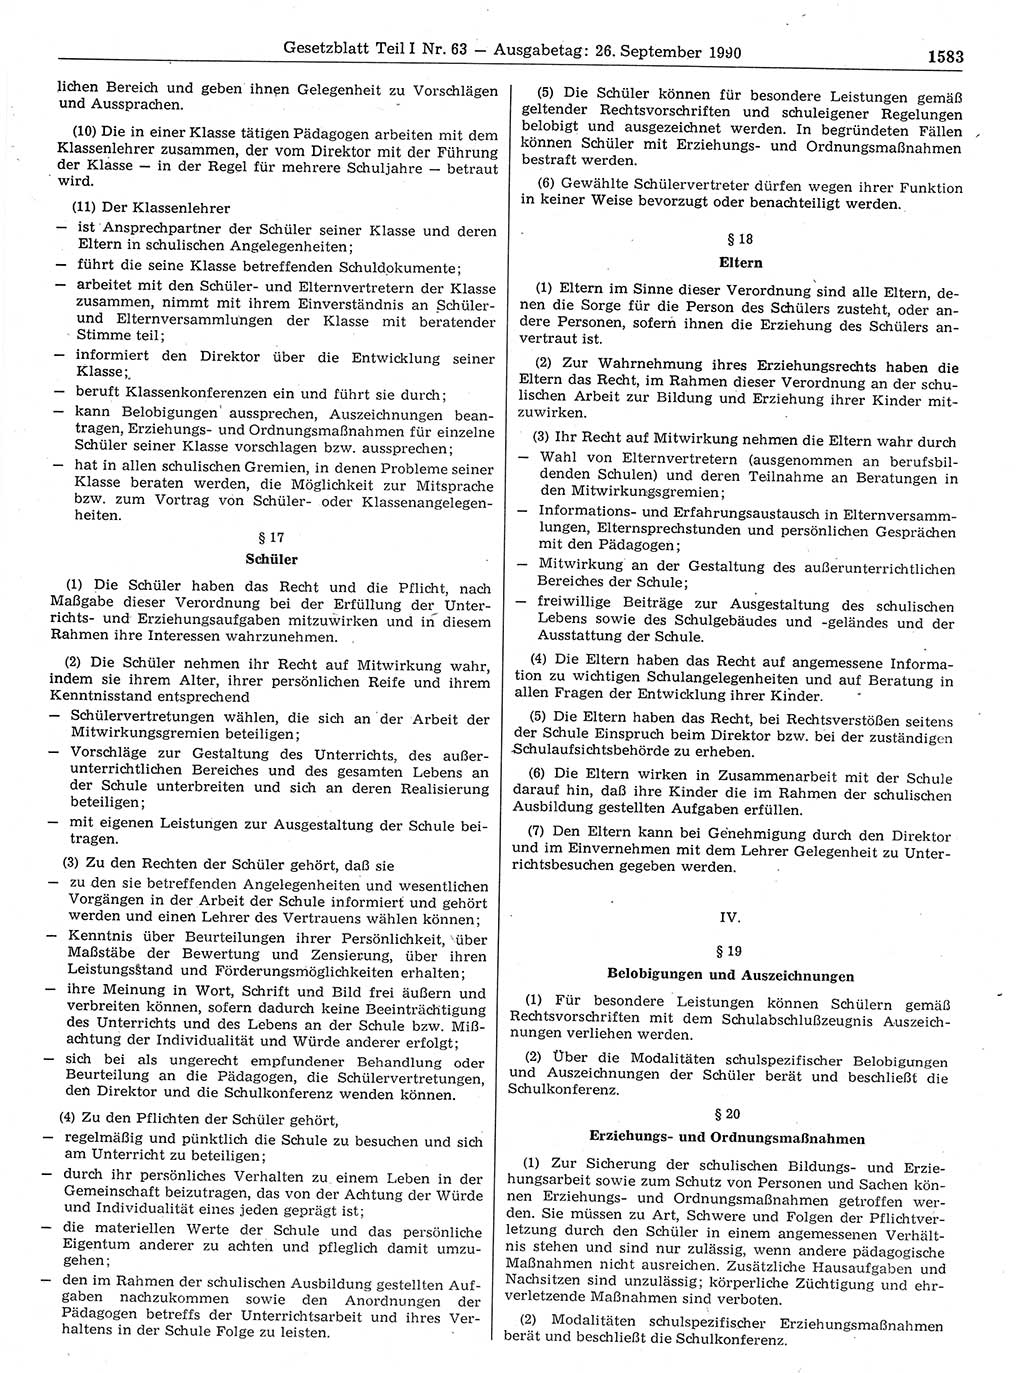 Gesetzblatt (GBl.) der Deutschen Demokratischen Republik (DDR) Teil Ⅰ 1990, Seite 1585 (GBl. DDR Ⅰ 1990, S. 1585)